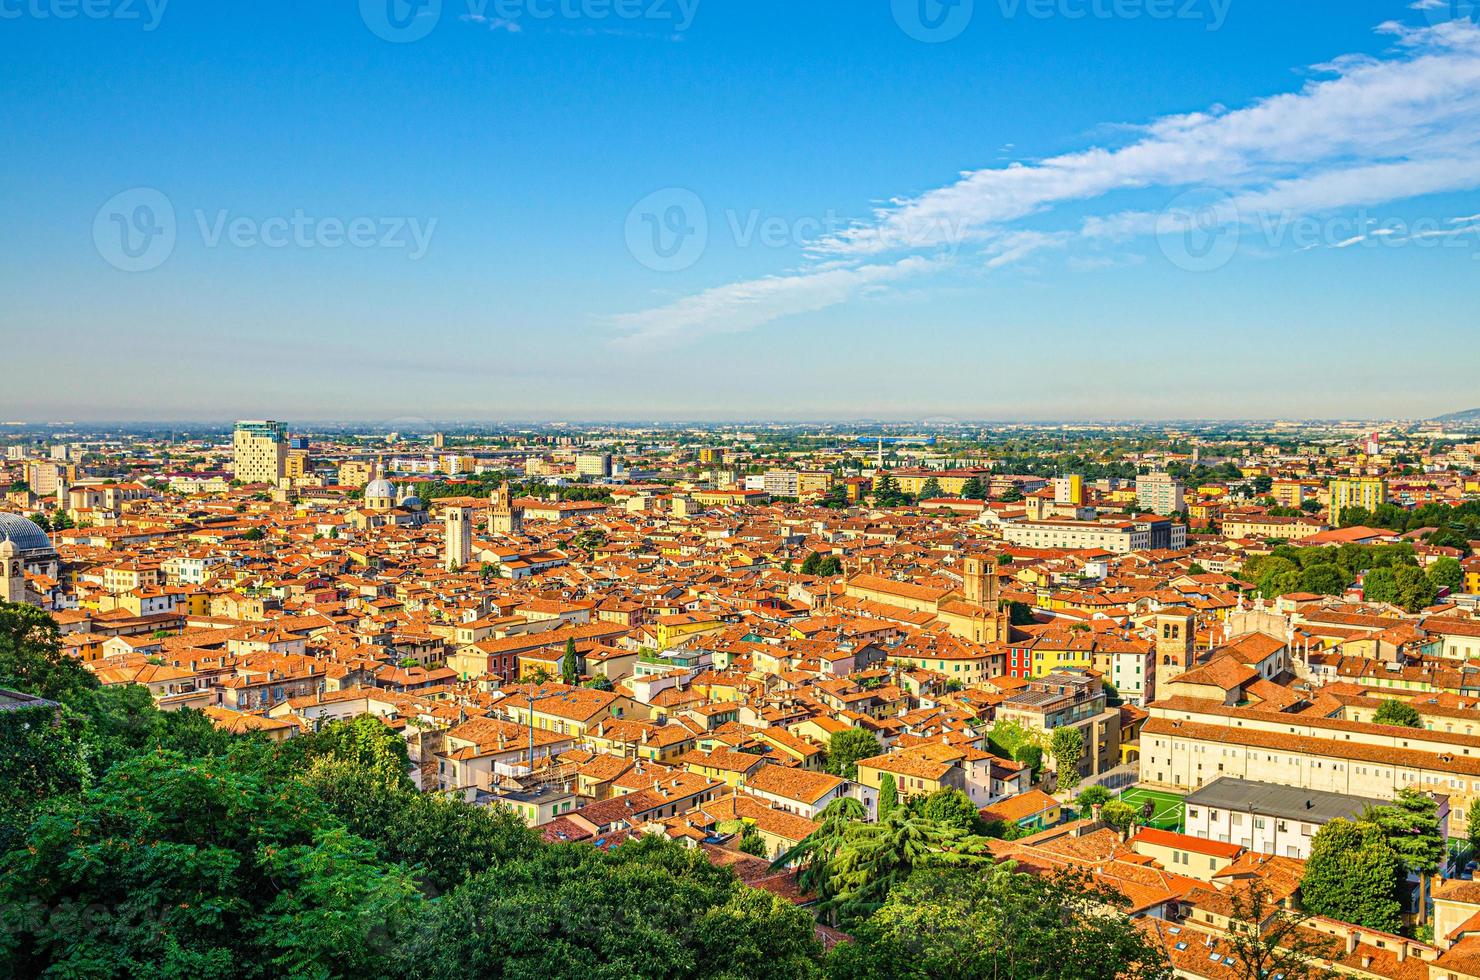 vista panorámica aérea del antiguo centro histórico de la ciudad de brescia con iglesias, torres y edificios medievales foto